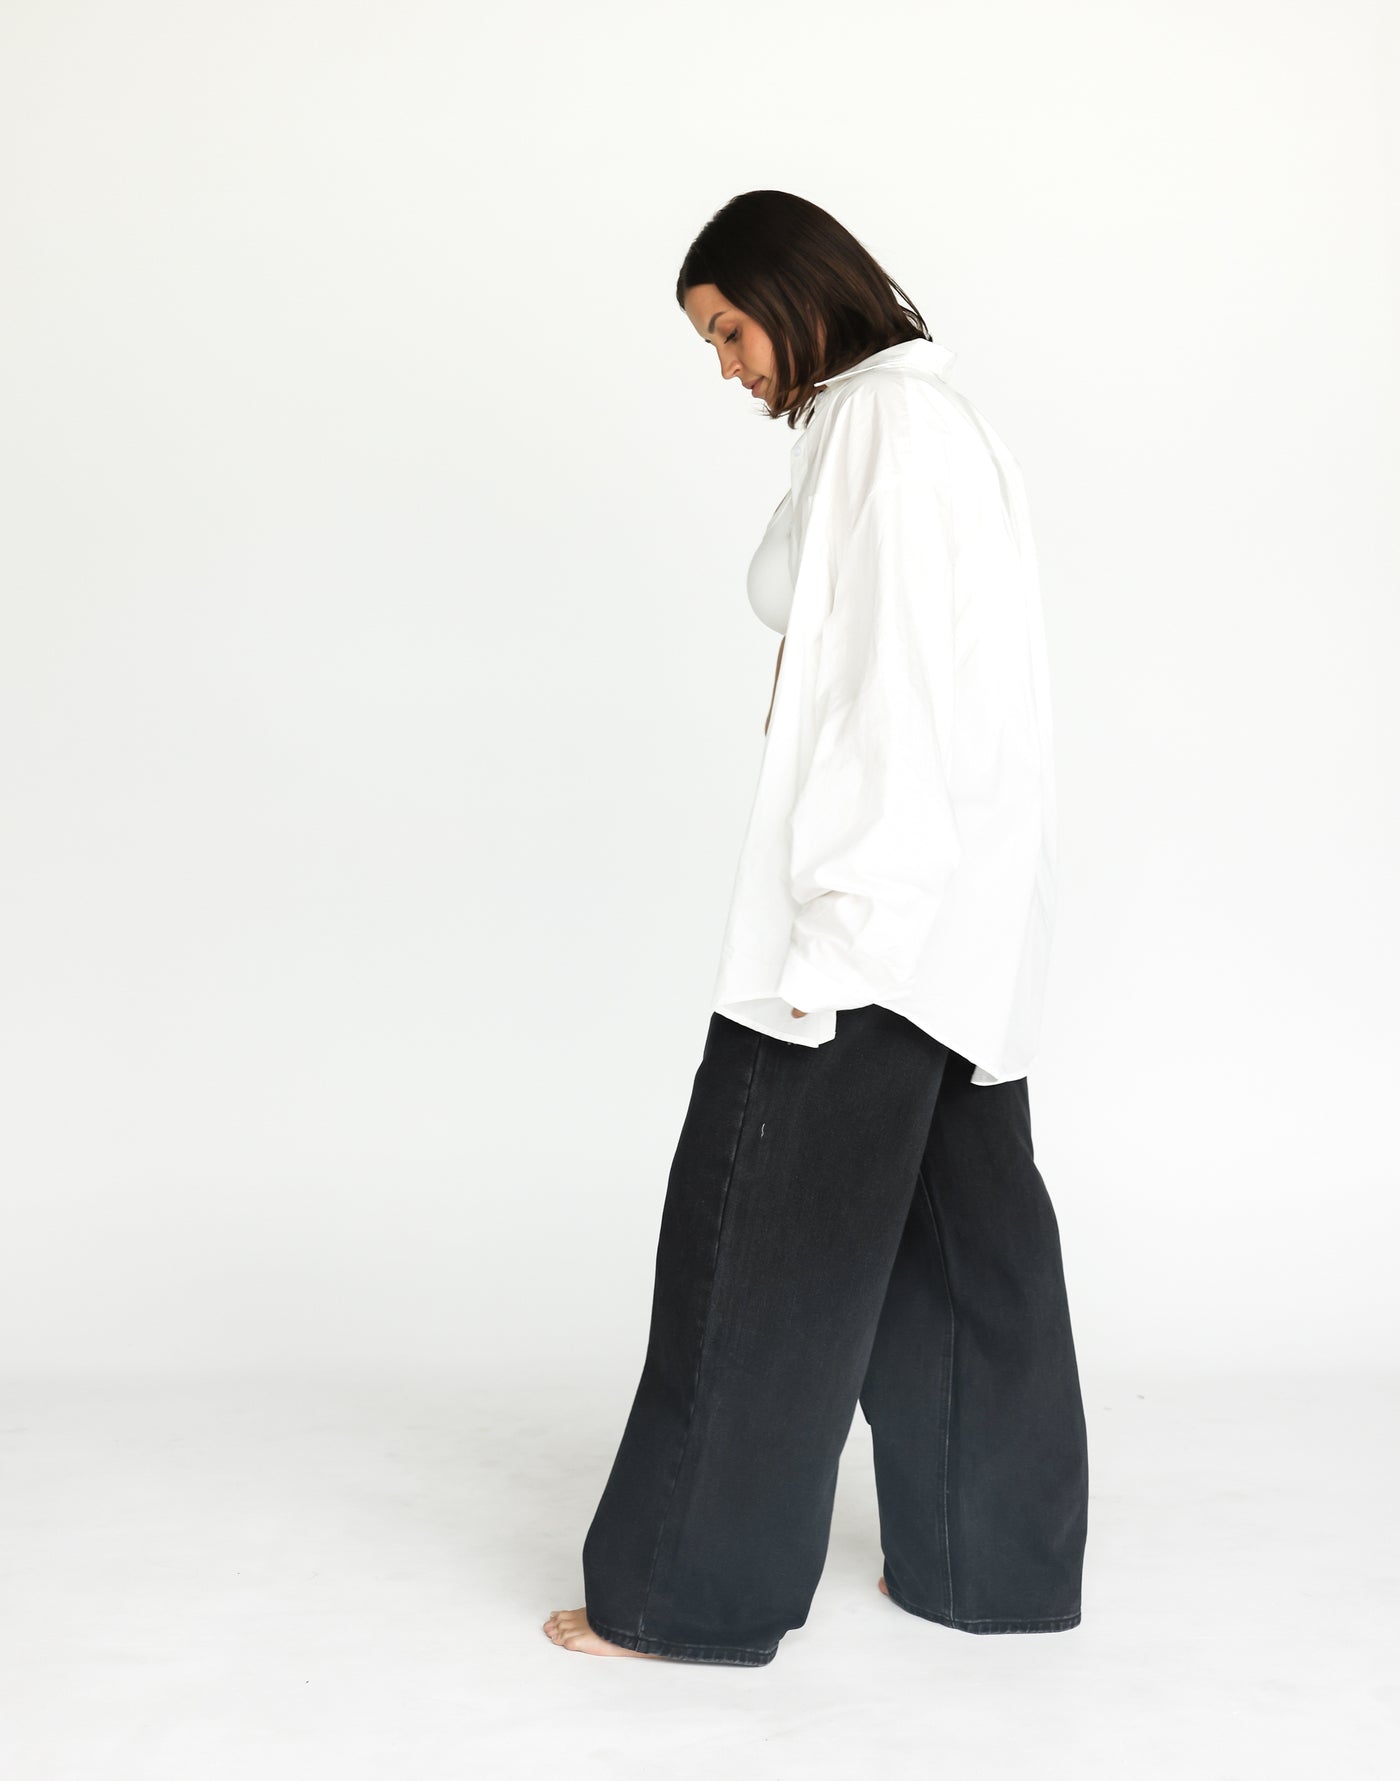 Roman Jeans (Vintage Black) | CHARCOAL Exclusive - Low Rise Wide Leg Jeans - Women's Pants - Charcoal Clothing